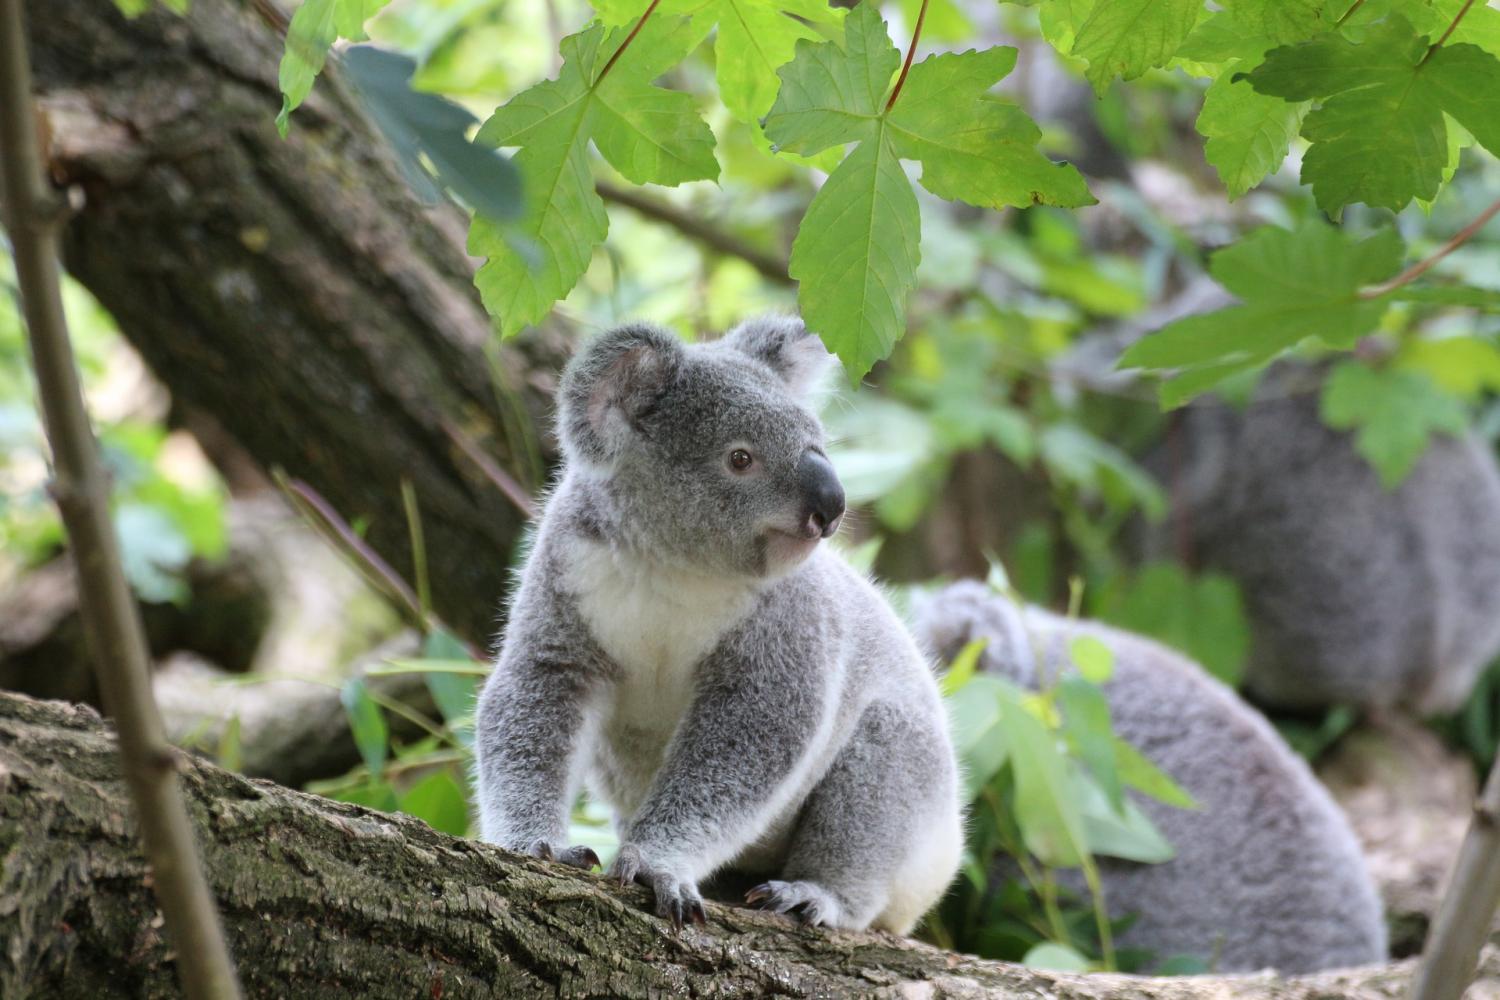 Stress and habitat linked to koala recovery